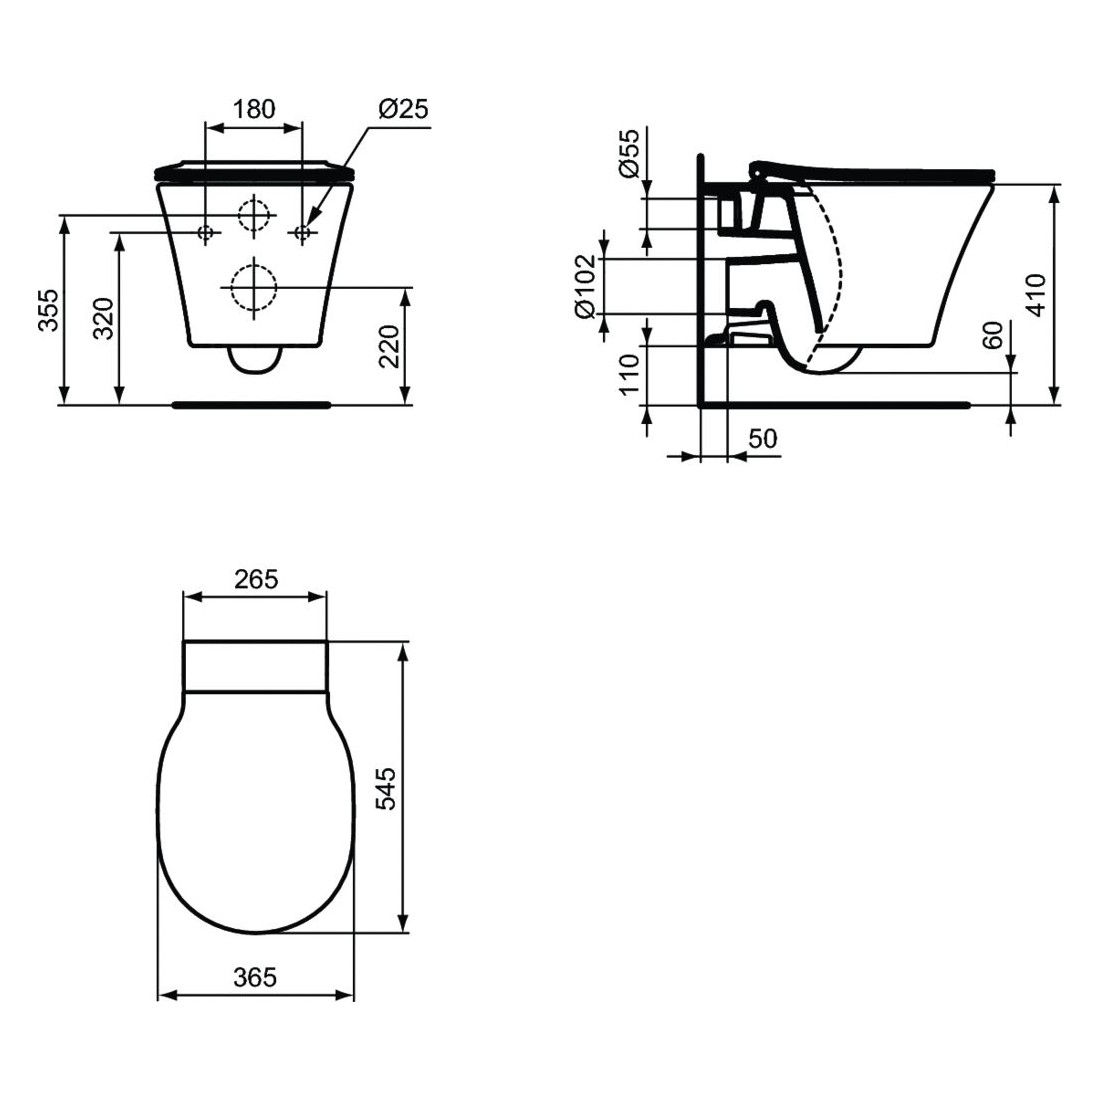 WC pakabinamas Ideal Standard Connect, Air Aquablade, su paslėptais tvirtinimais